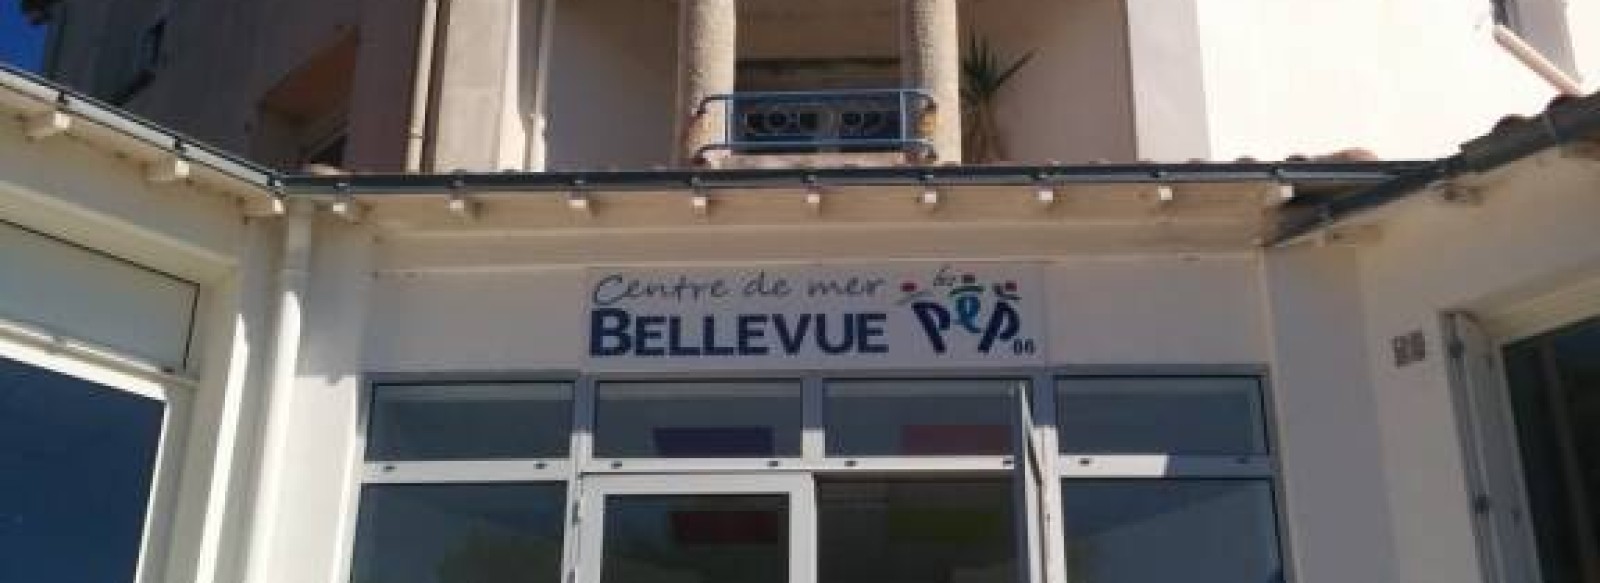 CENTRE DE MER BELLEVUE - PEP86